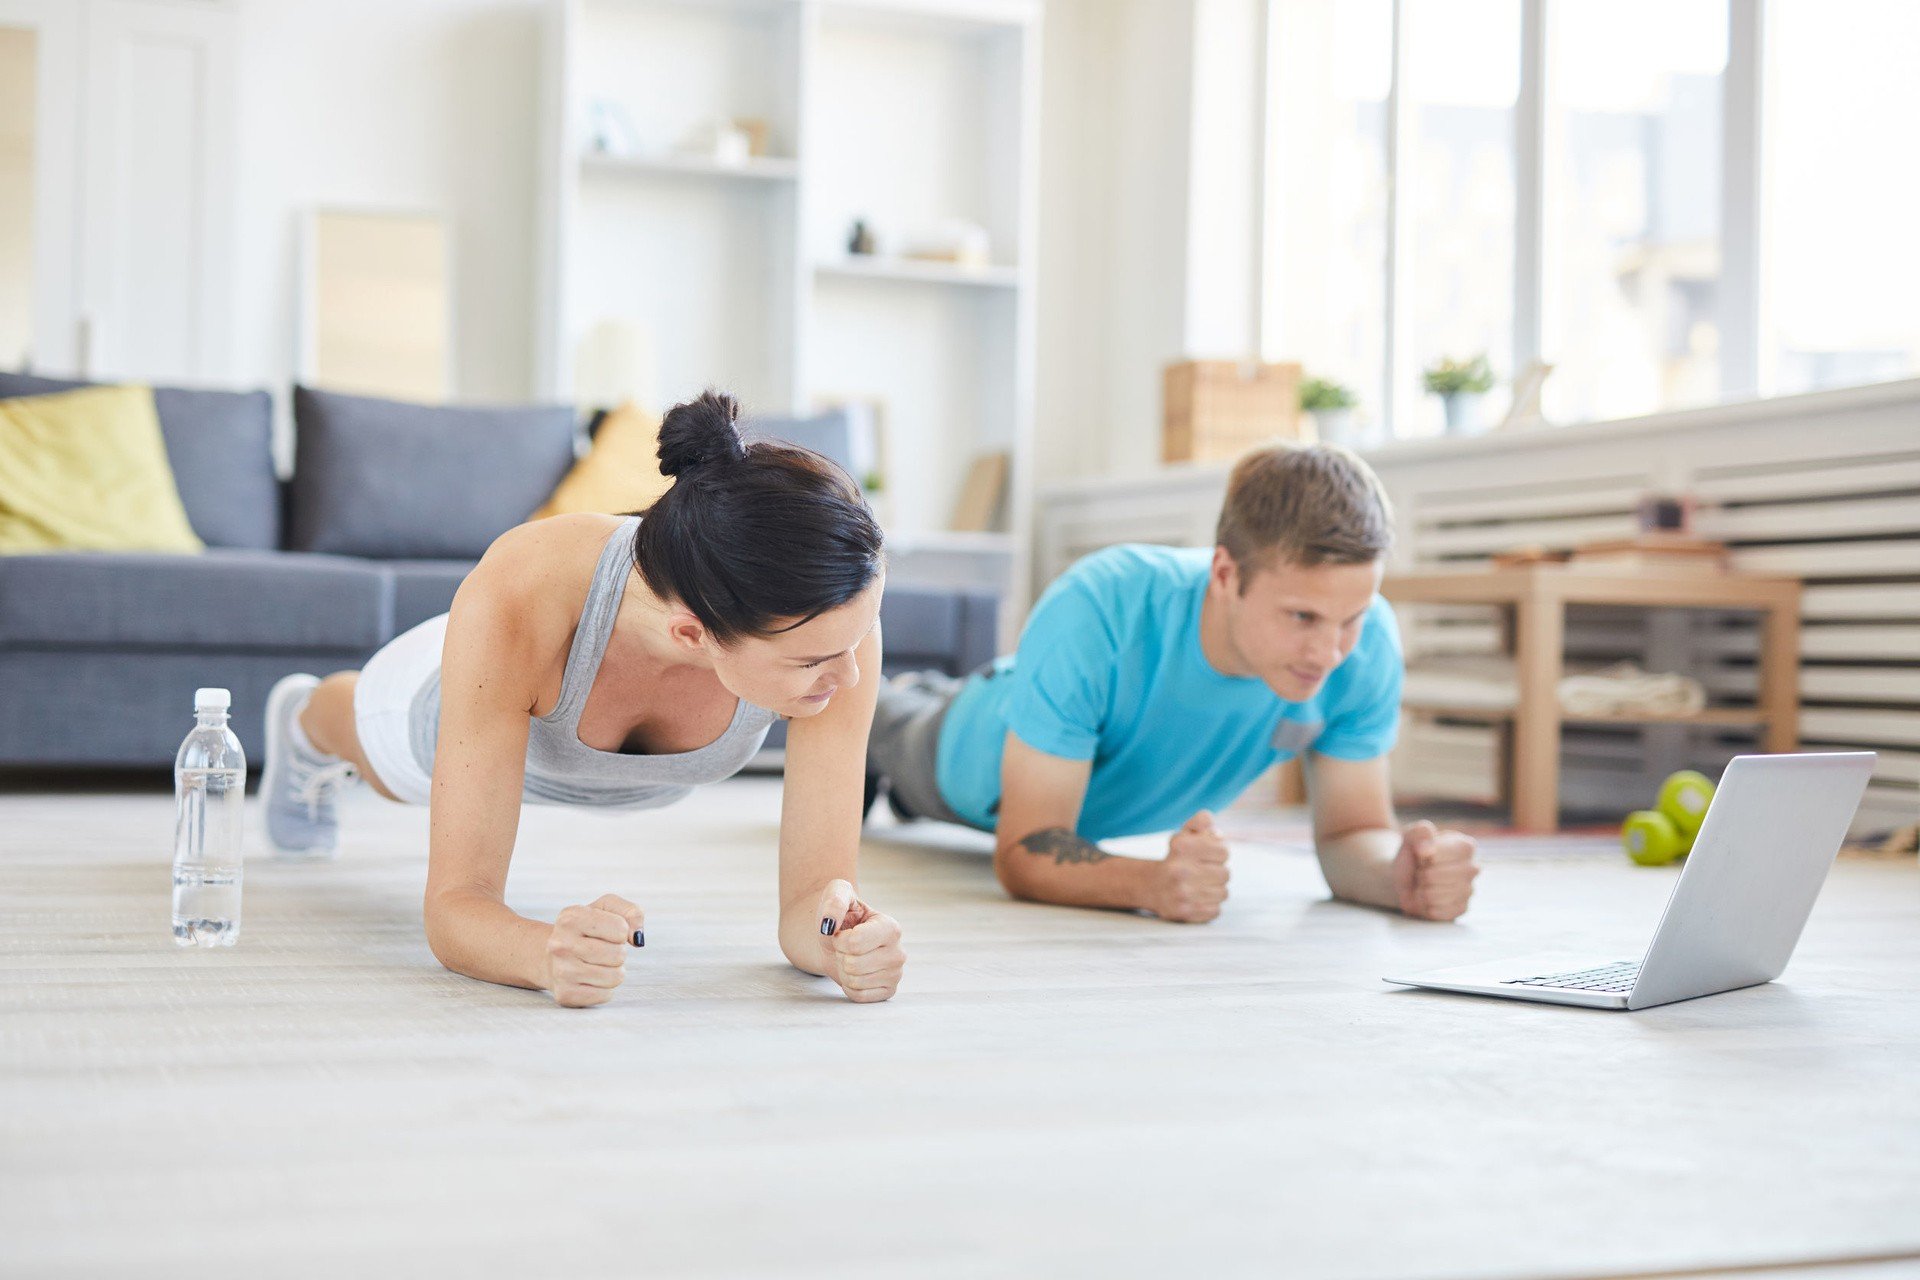 Aplikacje i kanały do ćwiczeń w domu, czyli jak zadbać o swoją formę we  własnych czterech kątach! | Strona Zdrowia